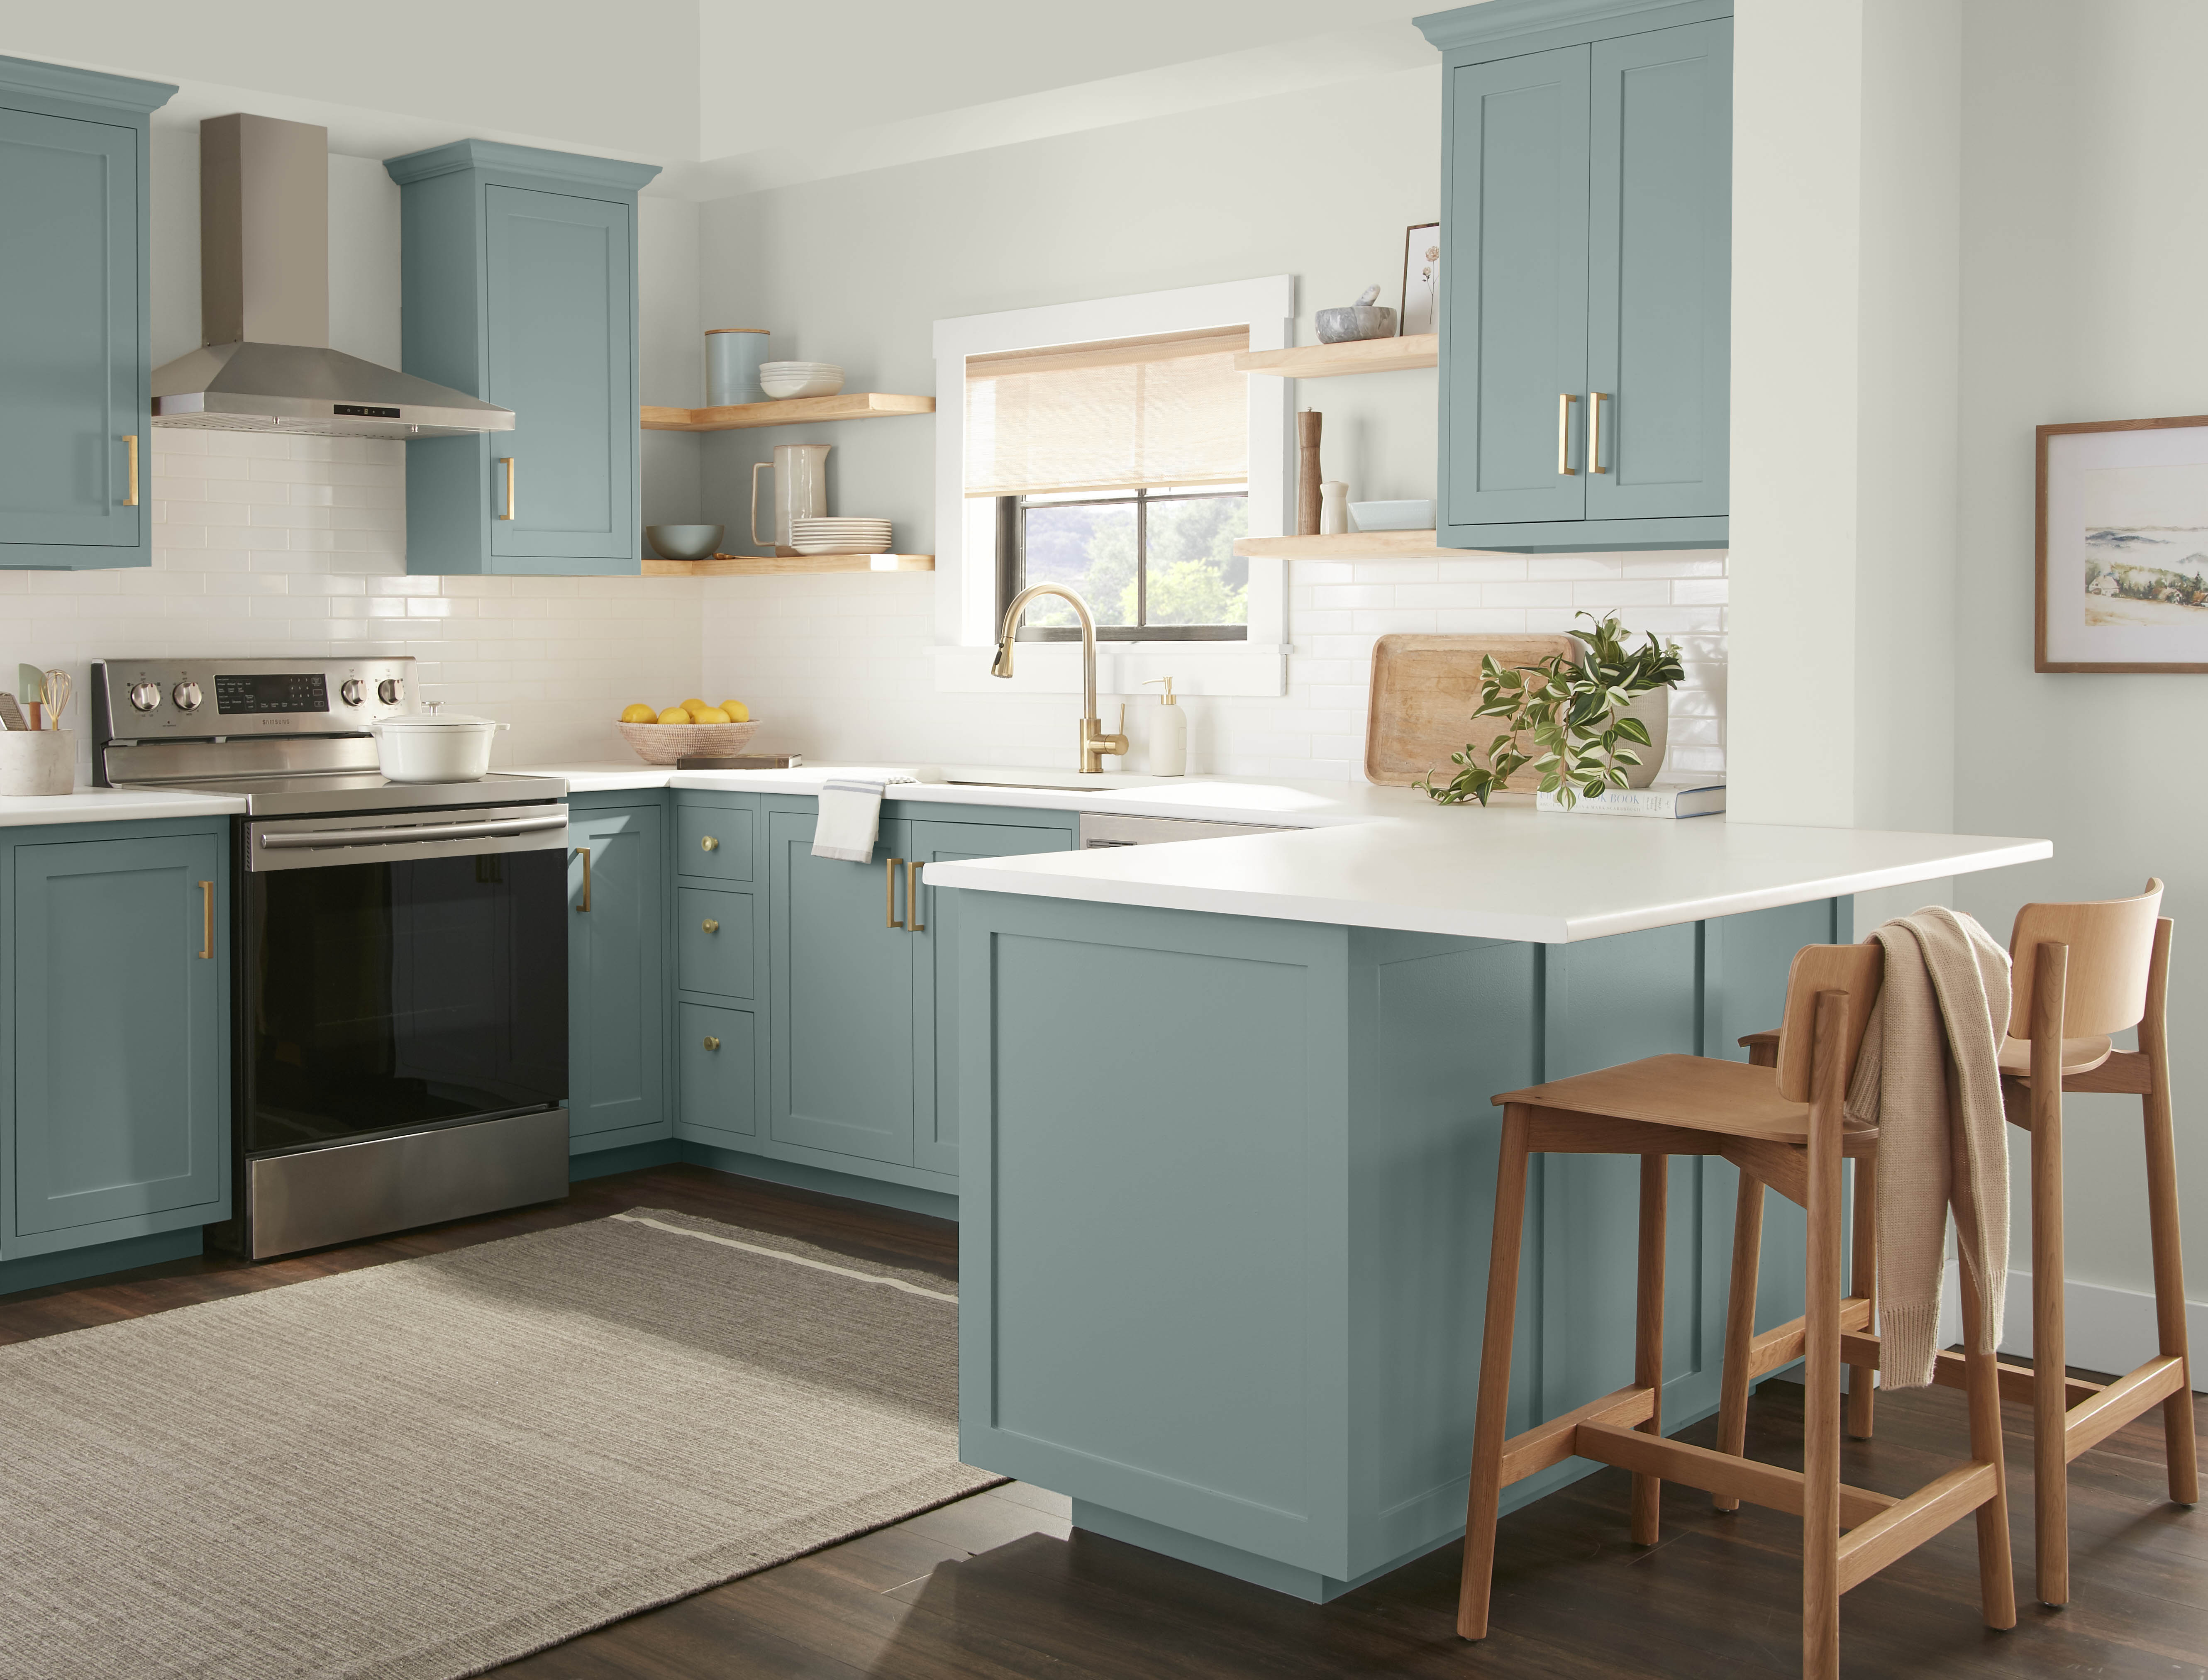 Une cuisine d'un blanc éclatant avec les armoires peintes dans une couleur bleu-vert poudreux